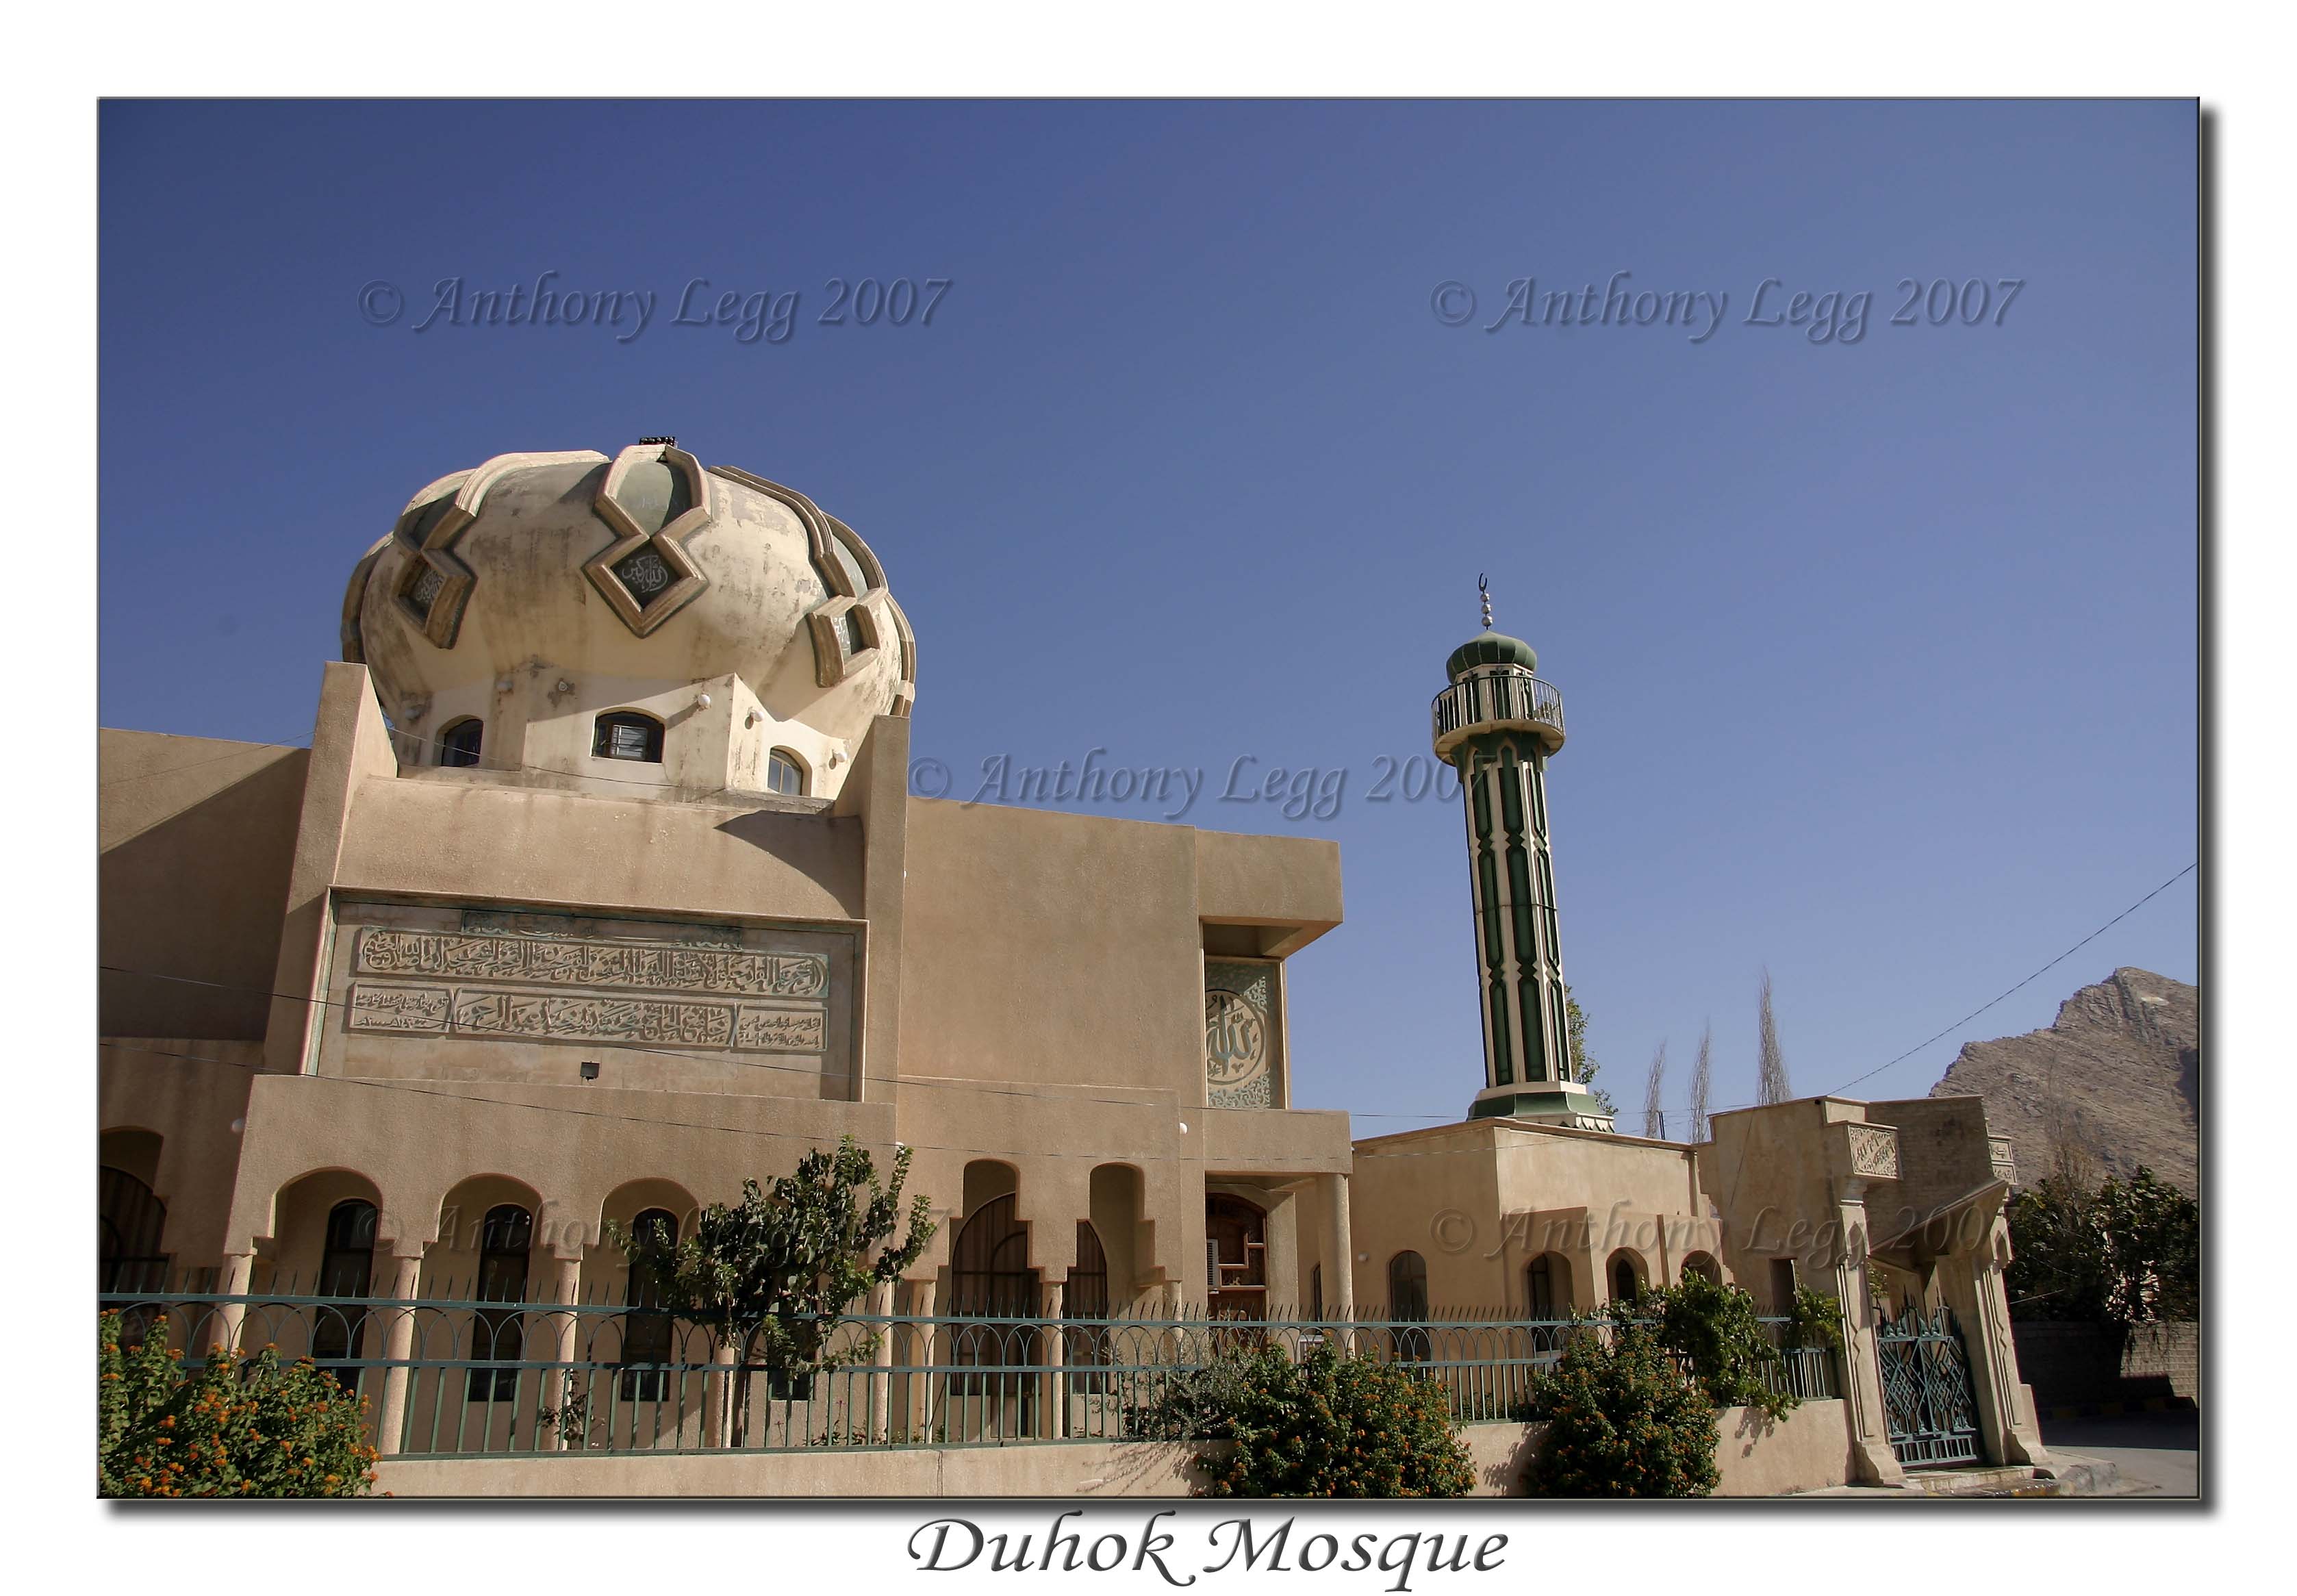 A Duhok Mosque